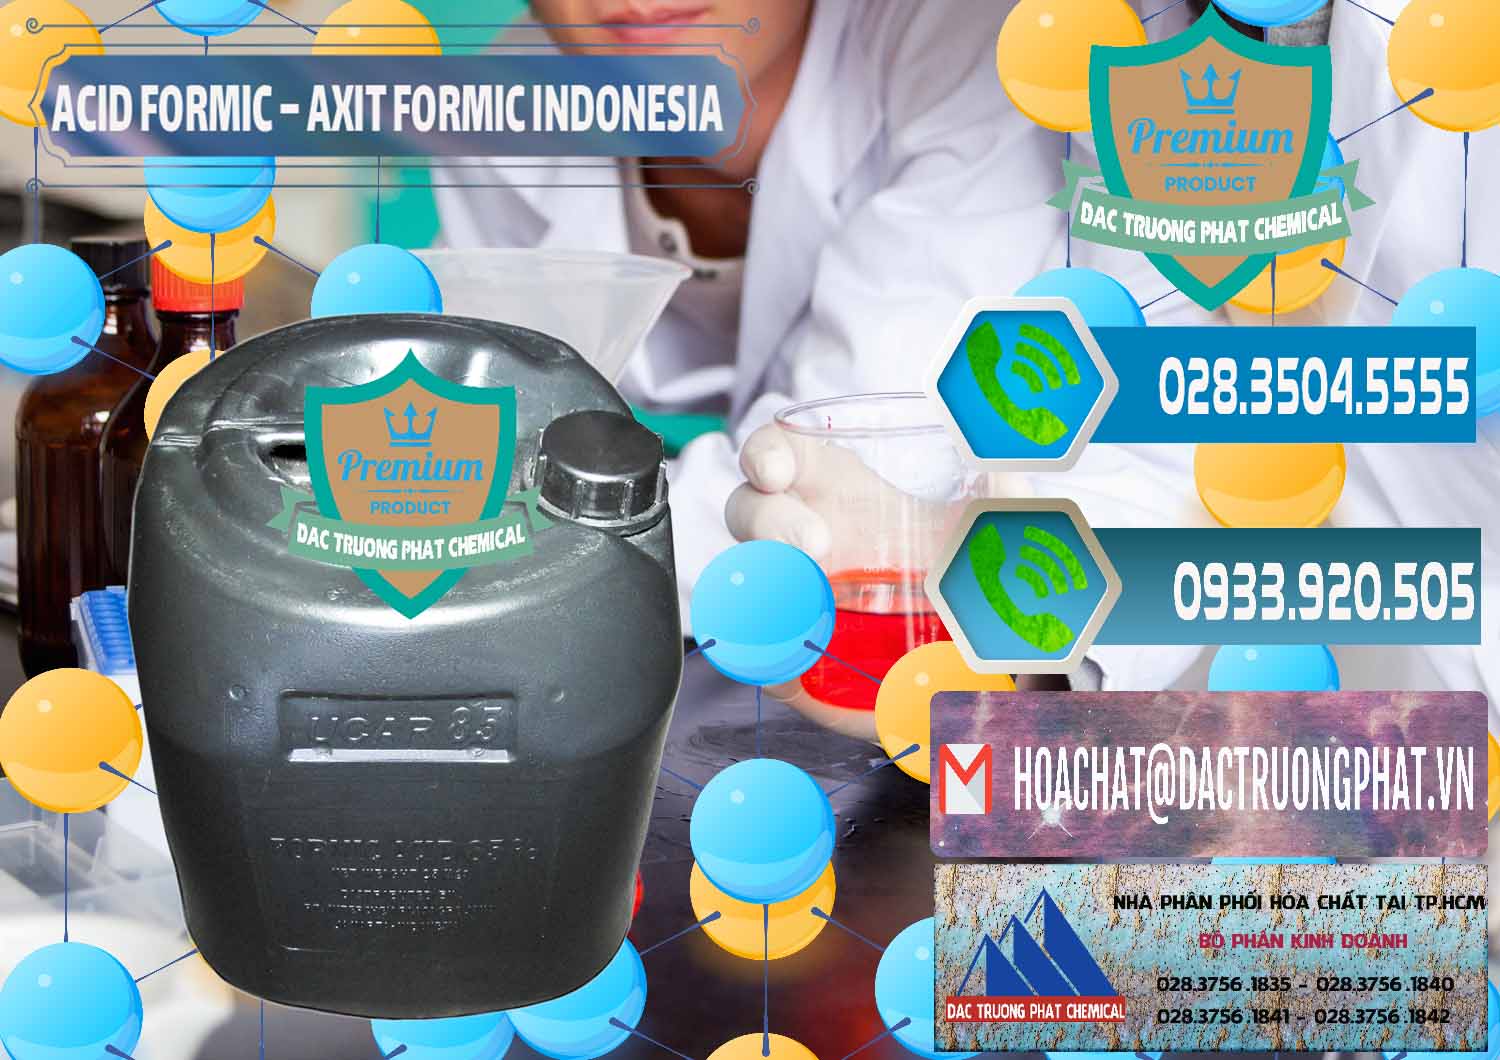 Đơn vị chuyên cung ứng _ bán Acid Formic - Axit Formic Indonesia - 0026 - Cty chuyên cung cấp - bán hóa chất tại TP.HCM - congtyhoachat.net